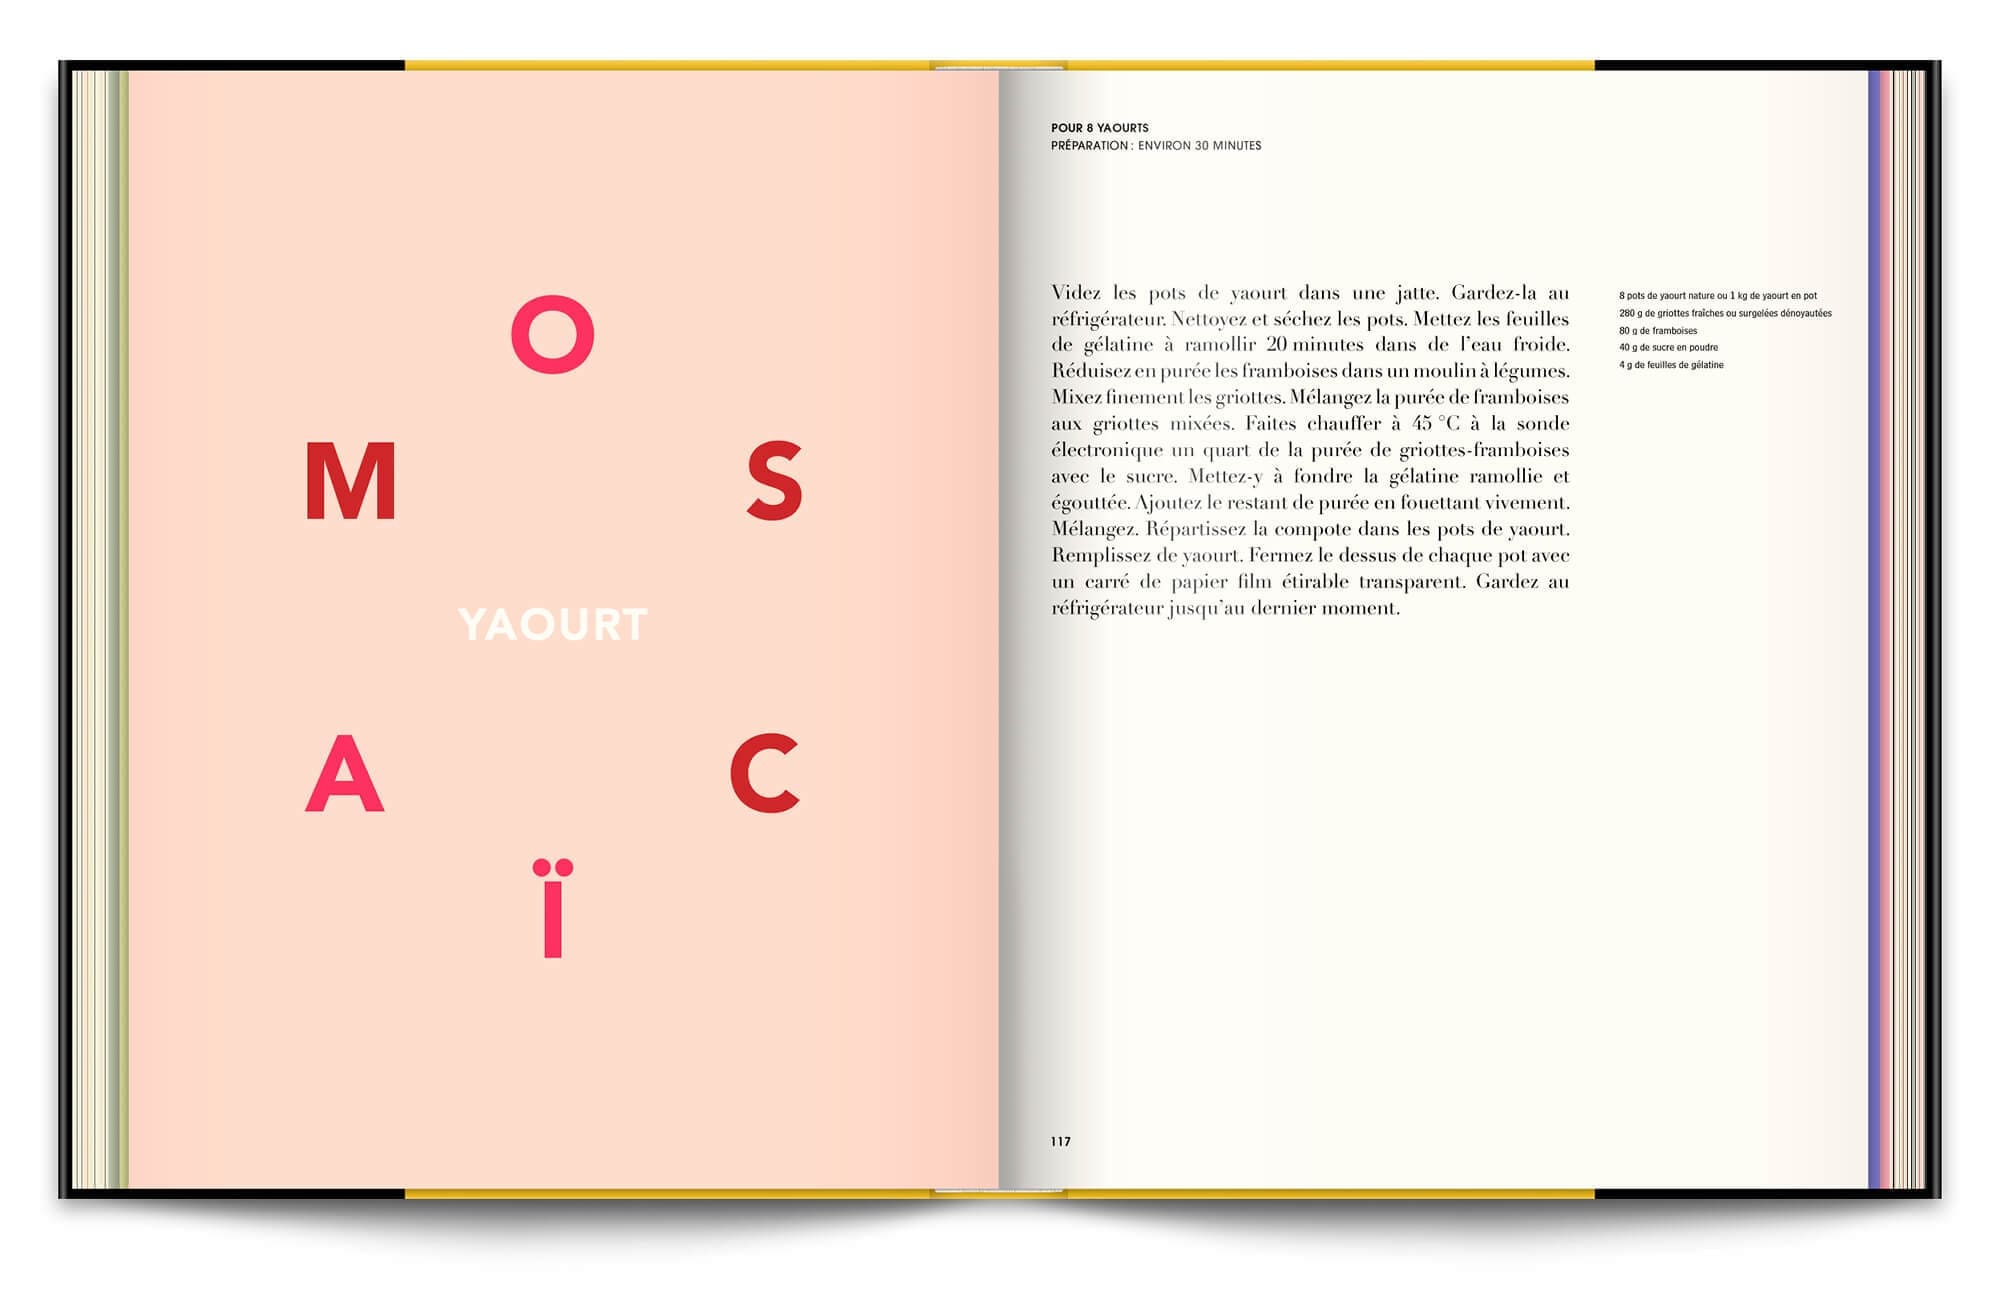 Le livre Infiniment de Pierre Hermé, typographie expressive et couleurs acidulées en rapport avec les recettes, direction artistique et éditorial IchetKar